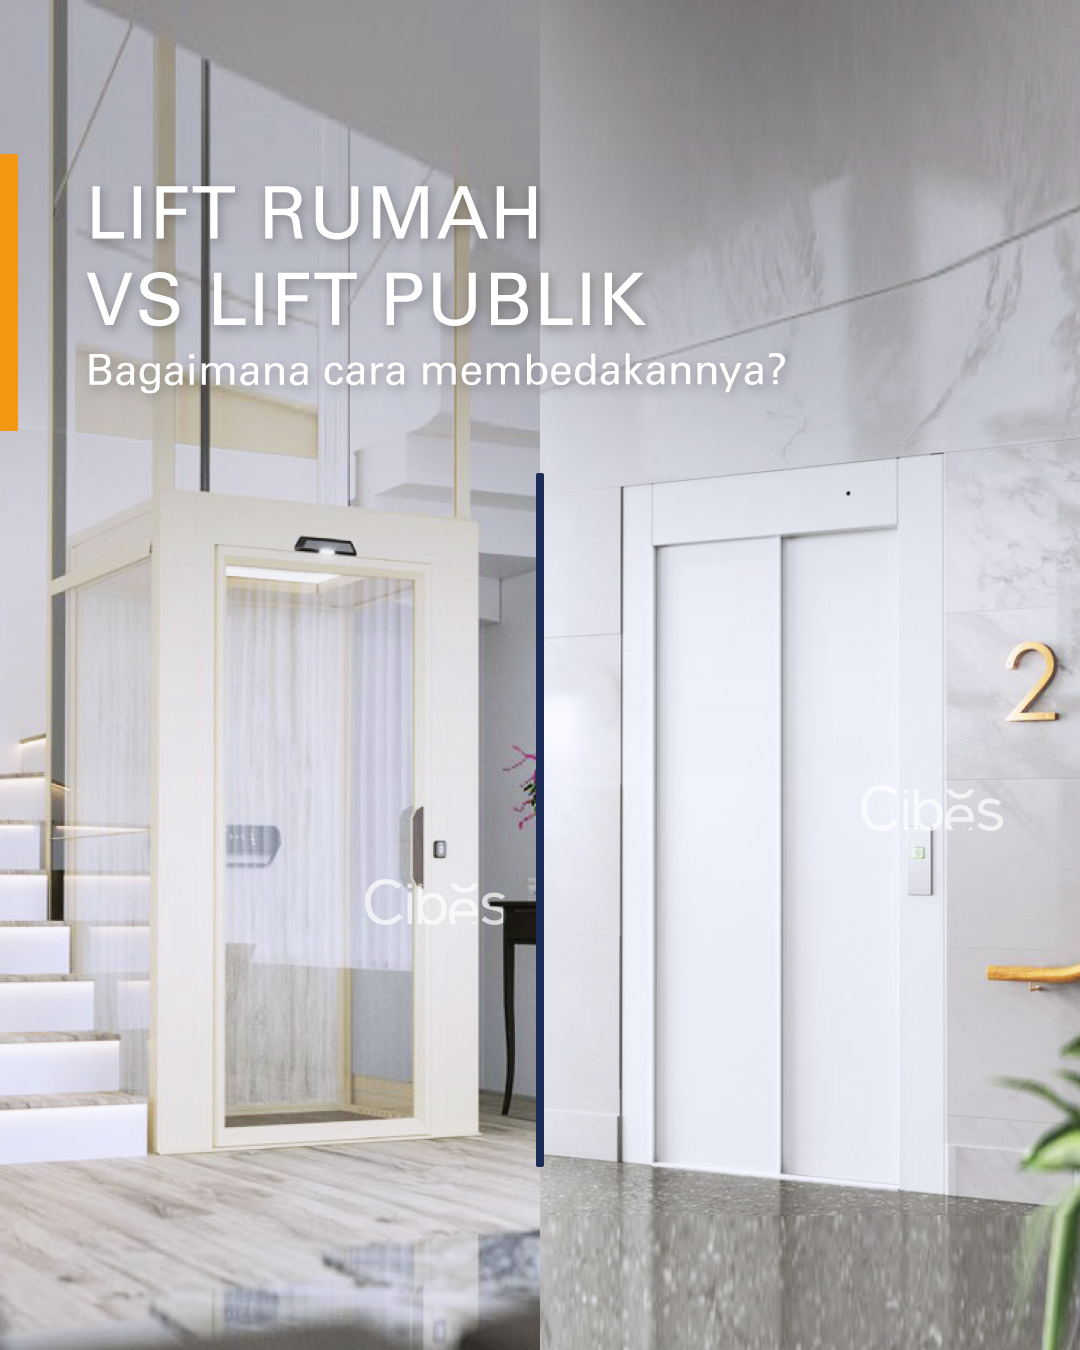 Perbedaan Lift Rumah dengan Lift Publik